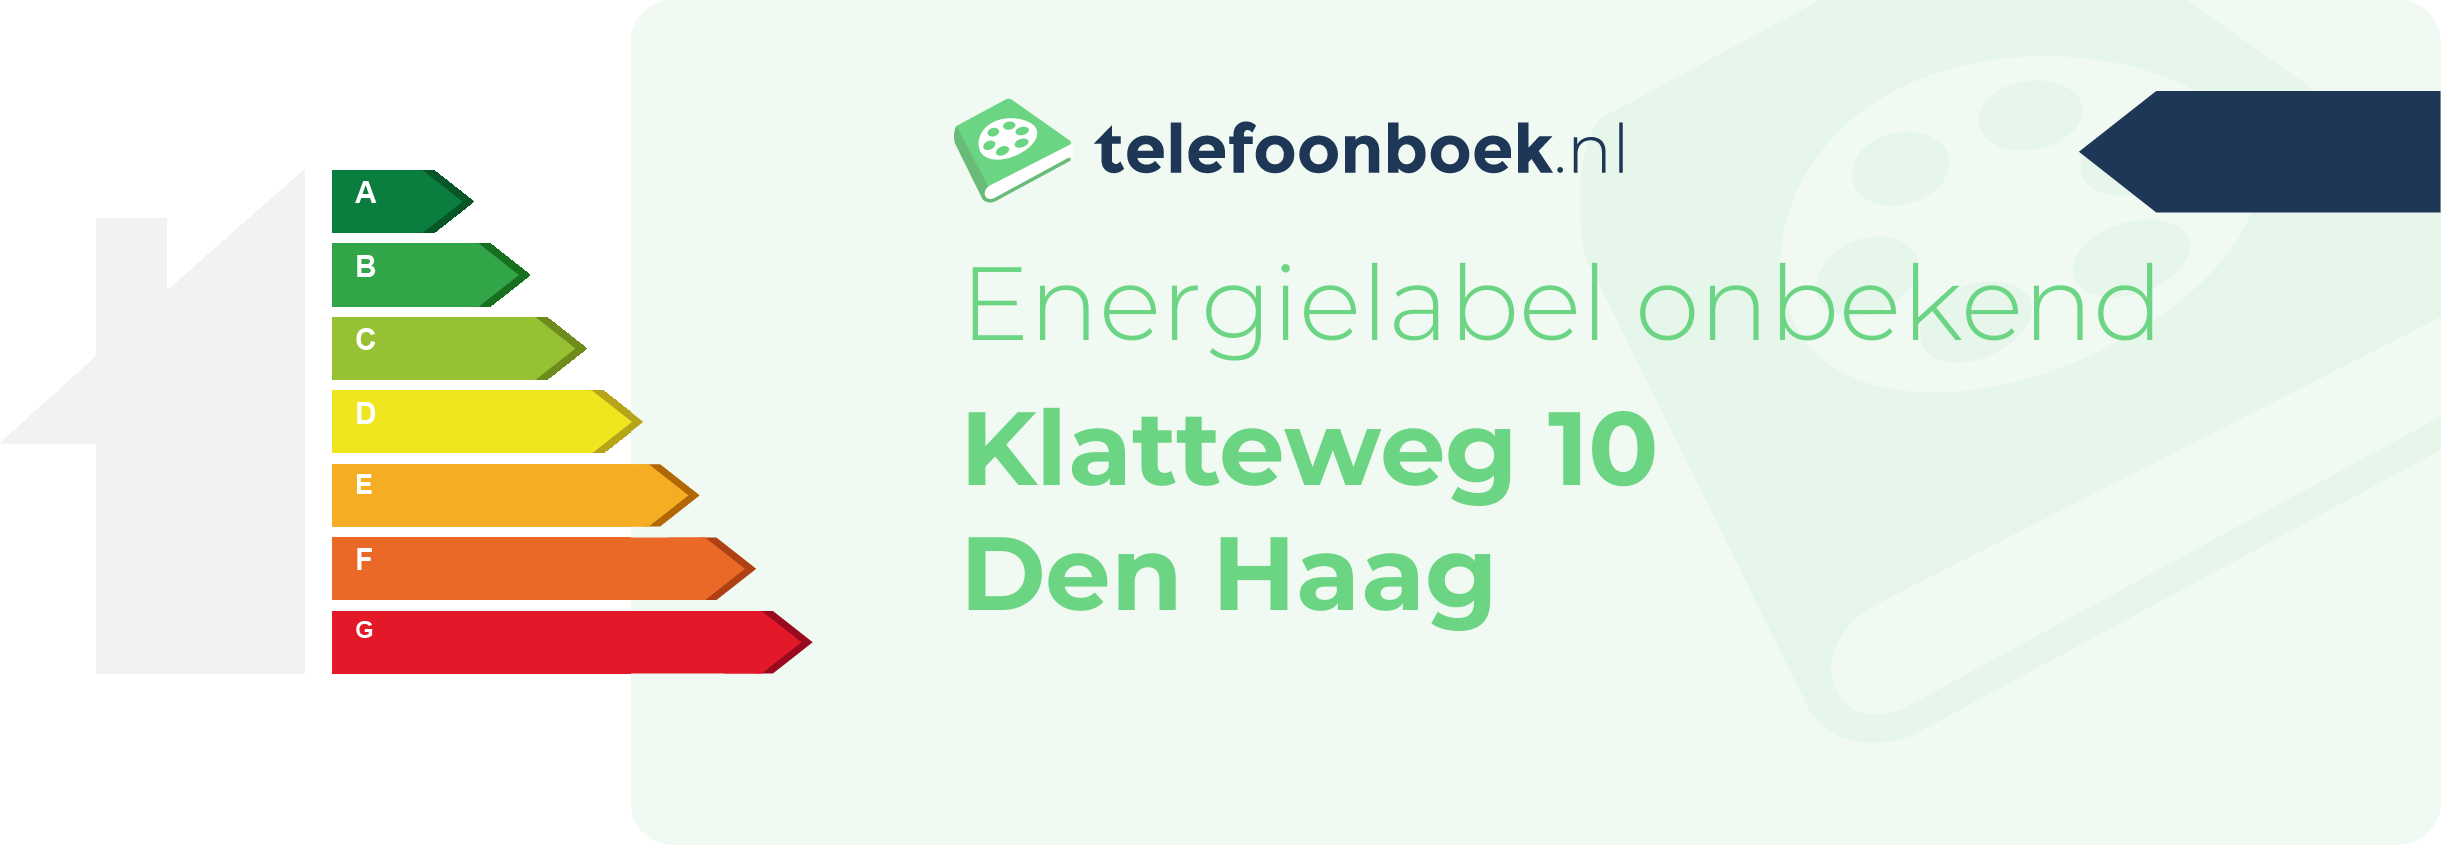 Energielabel Klatteweg 10 Den Haag